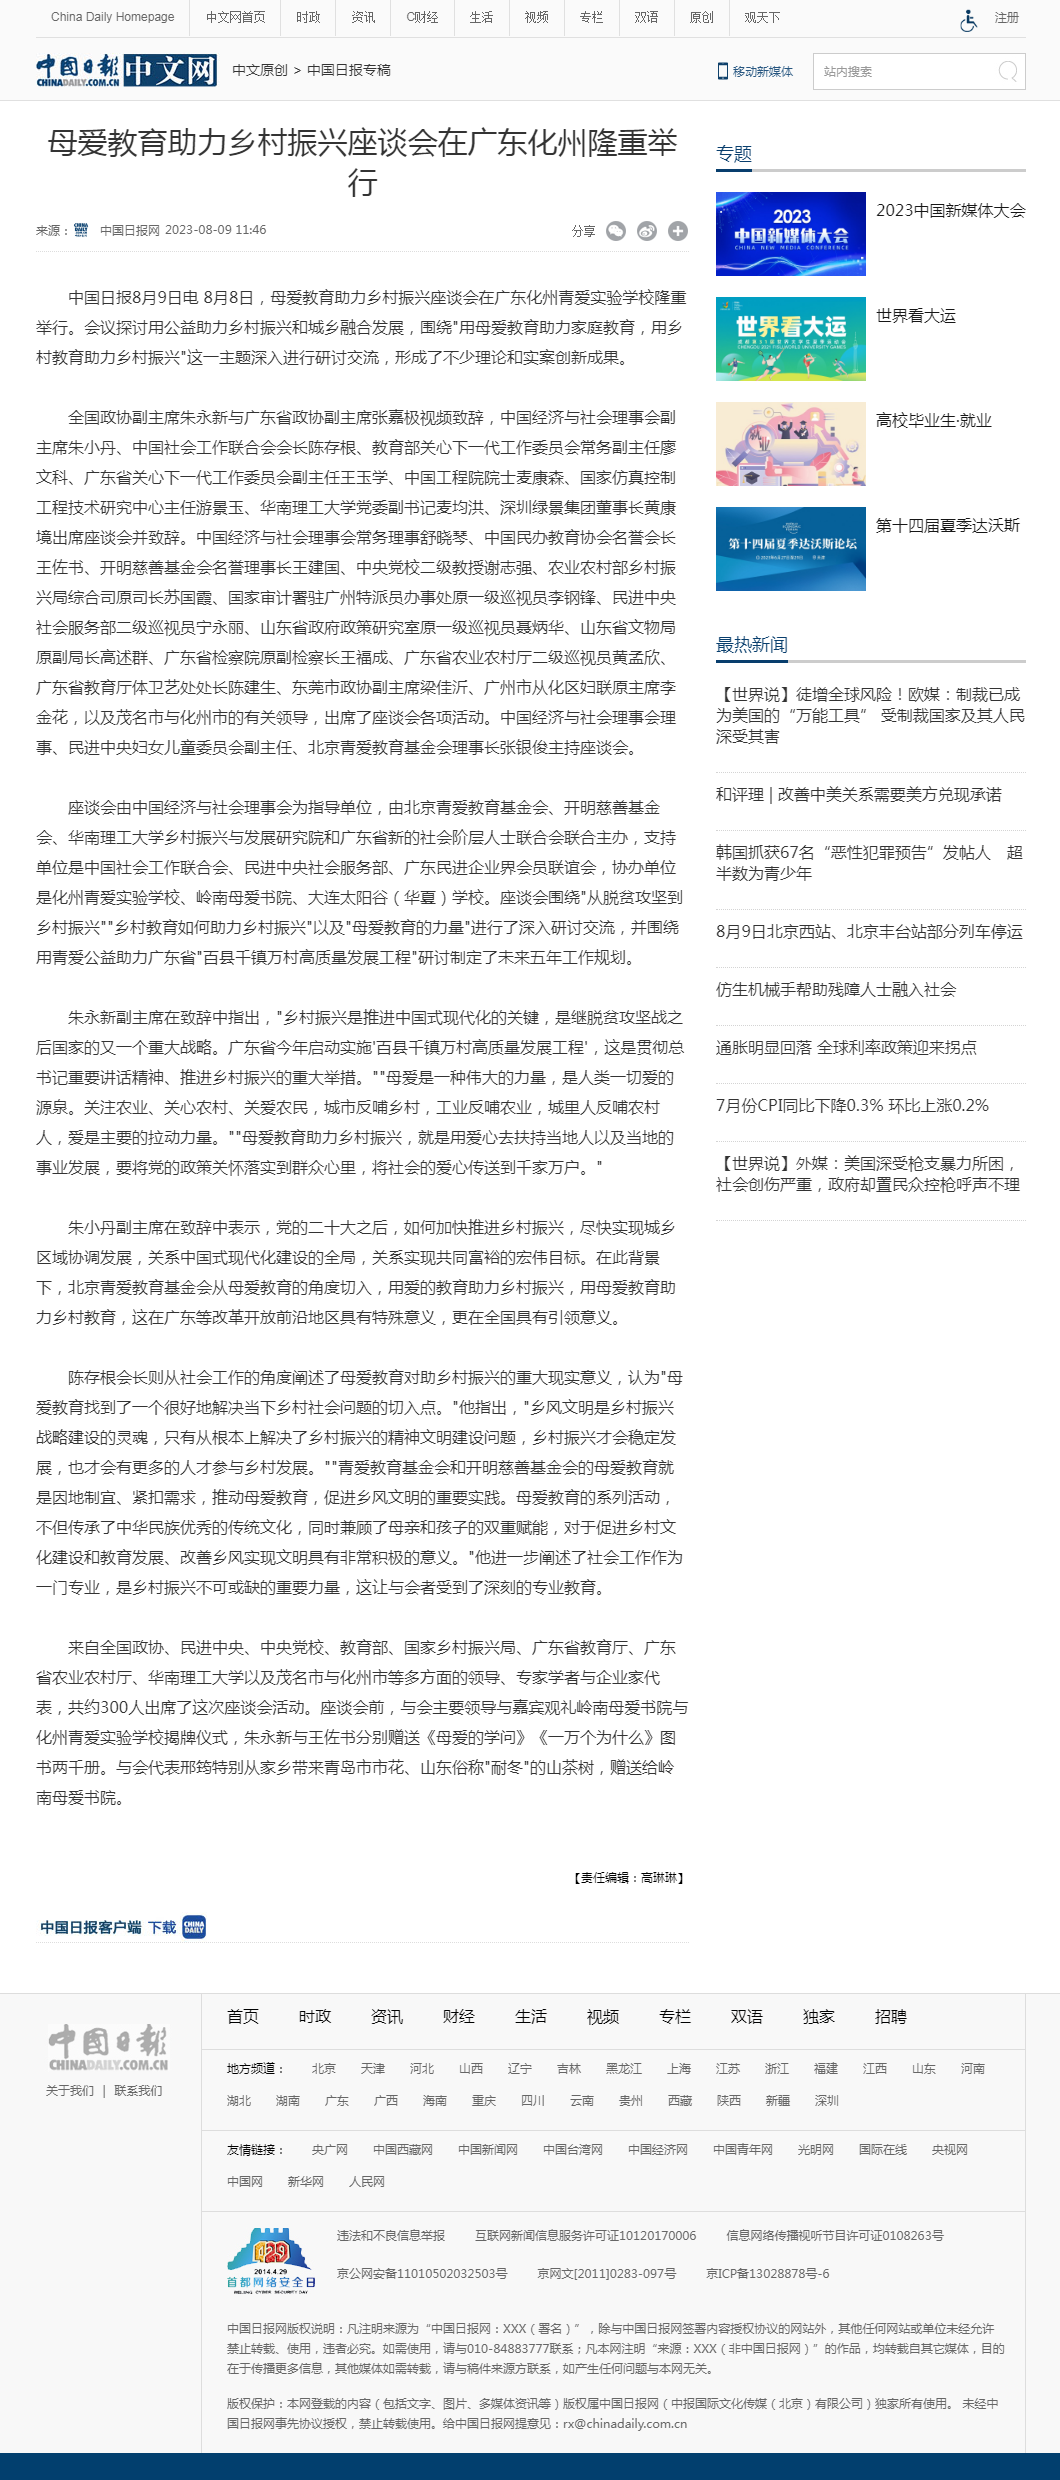 母爱教育助力乡村振兴座谈会在广东化州隆重举行 - 中国日报网